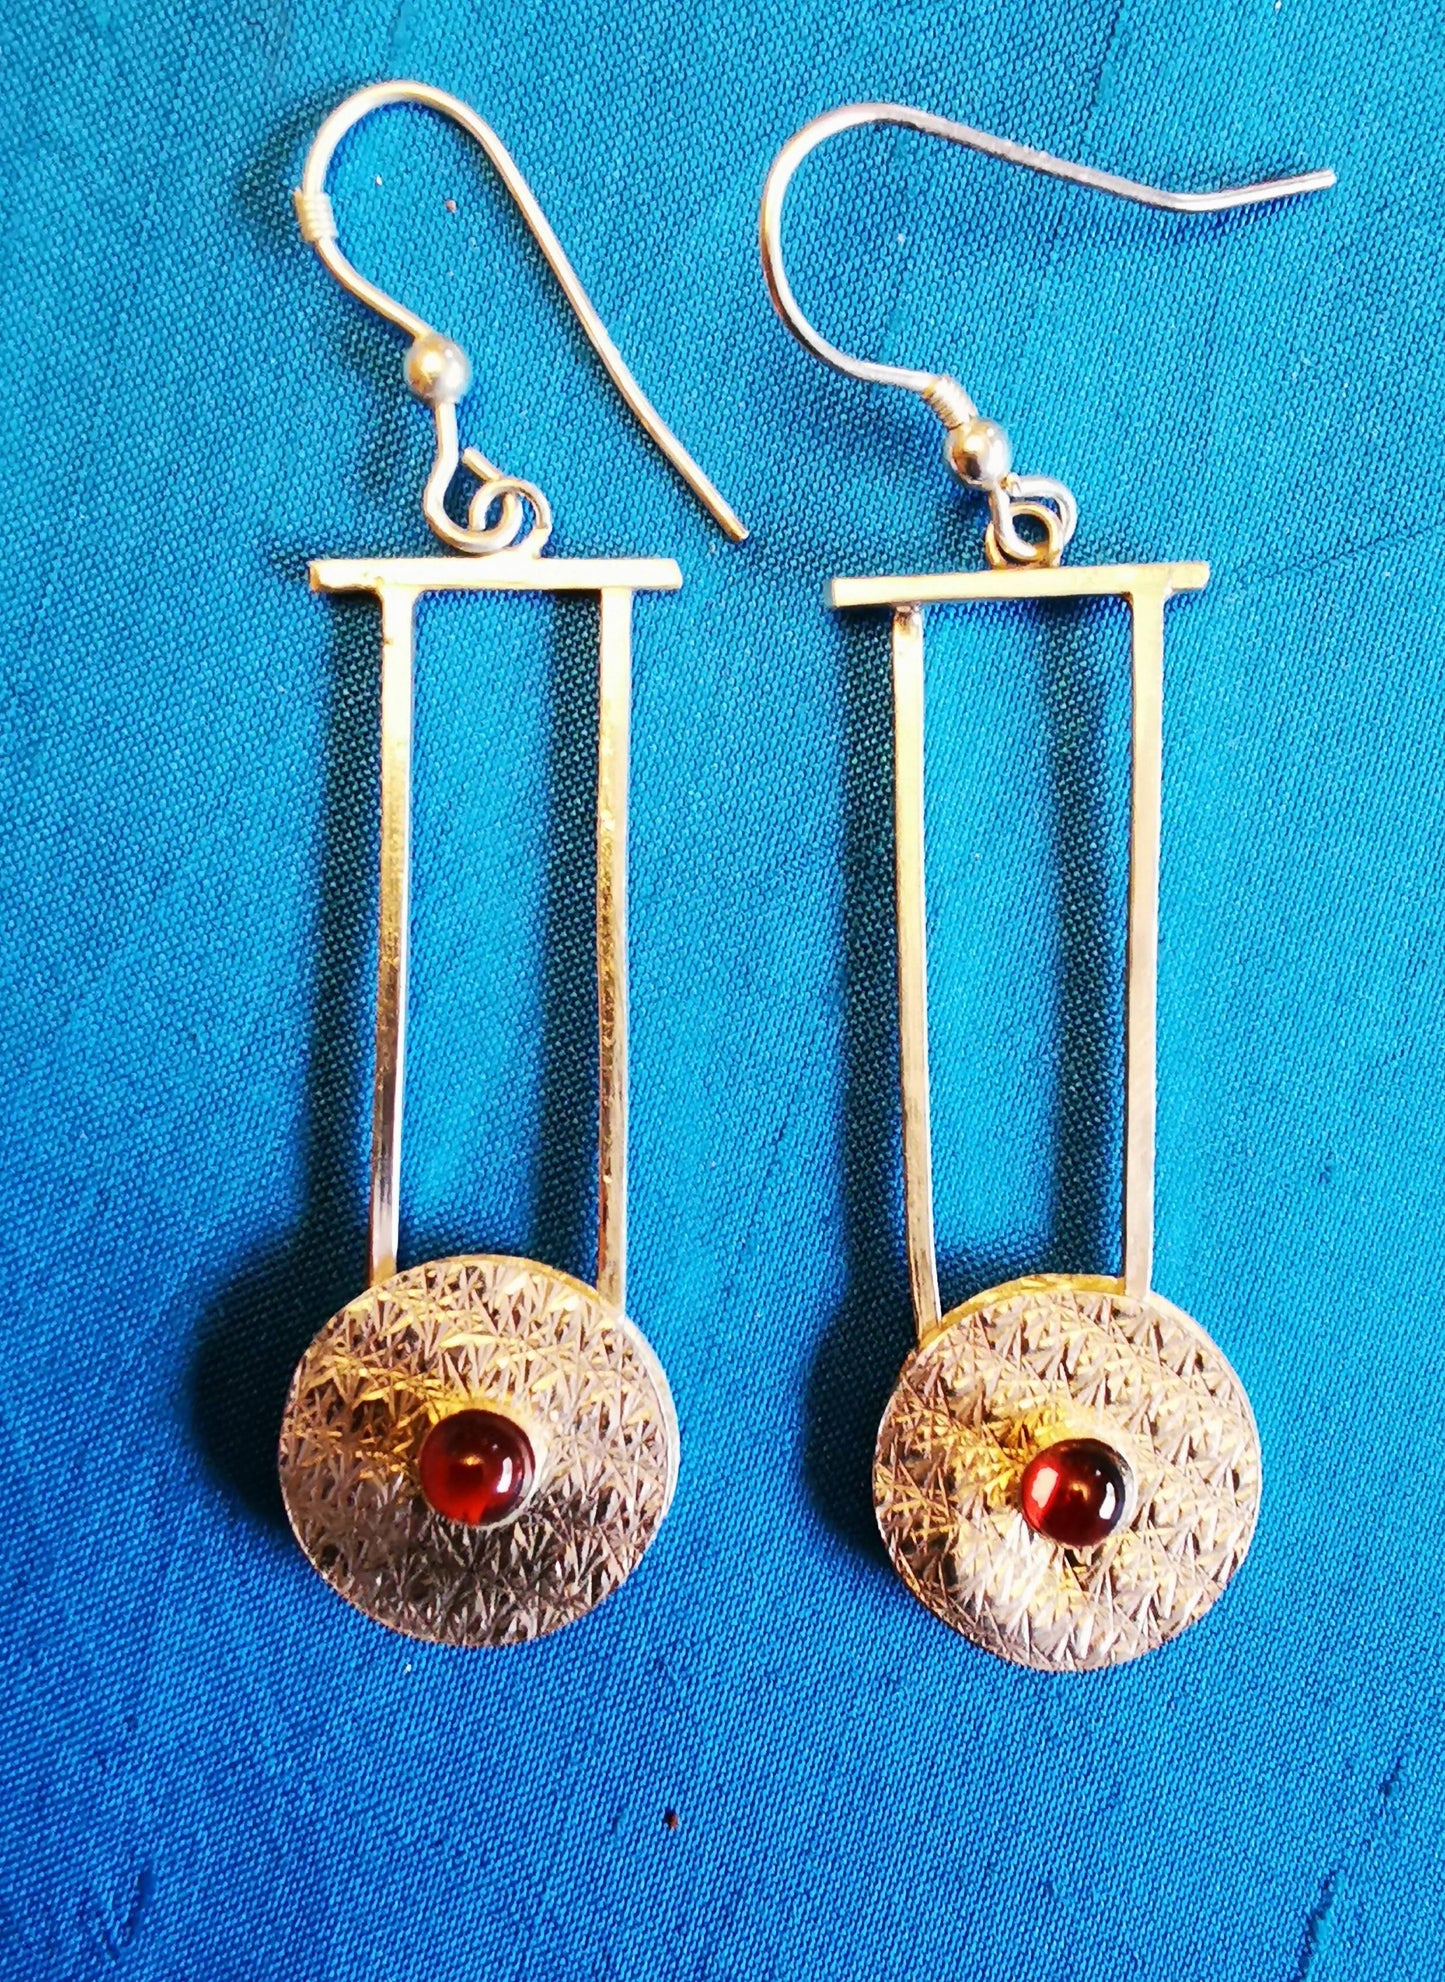 Silver patterned disc earrings